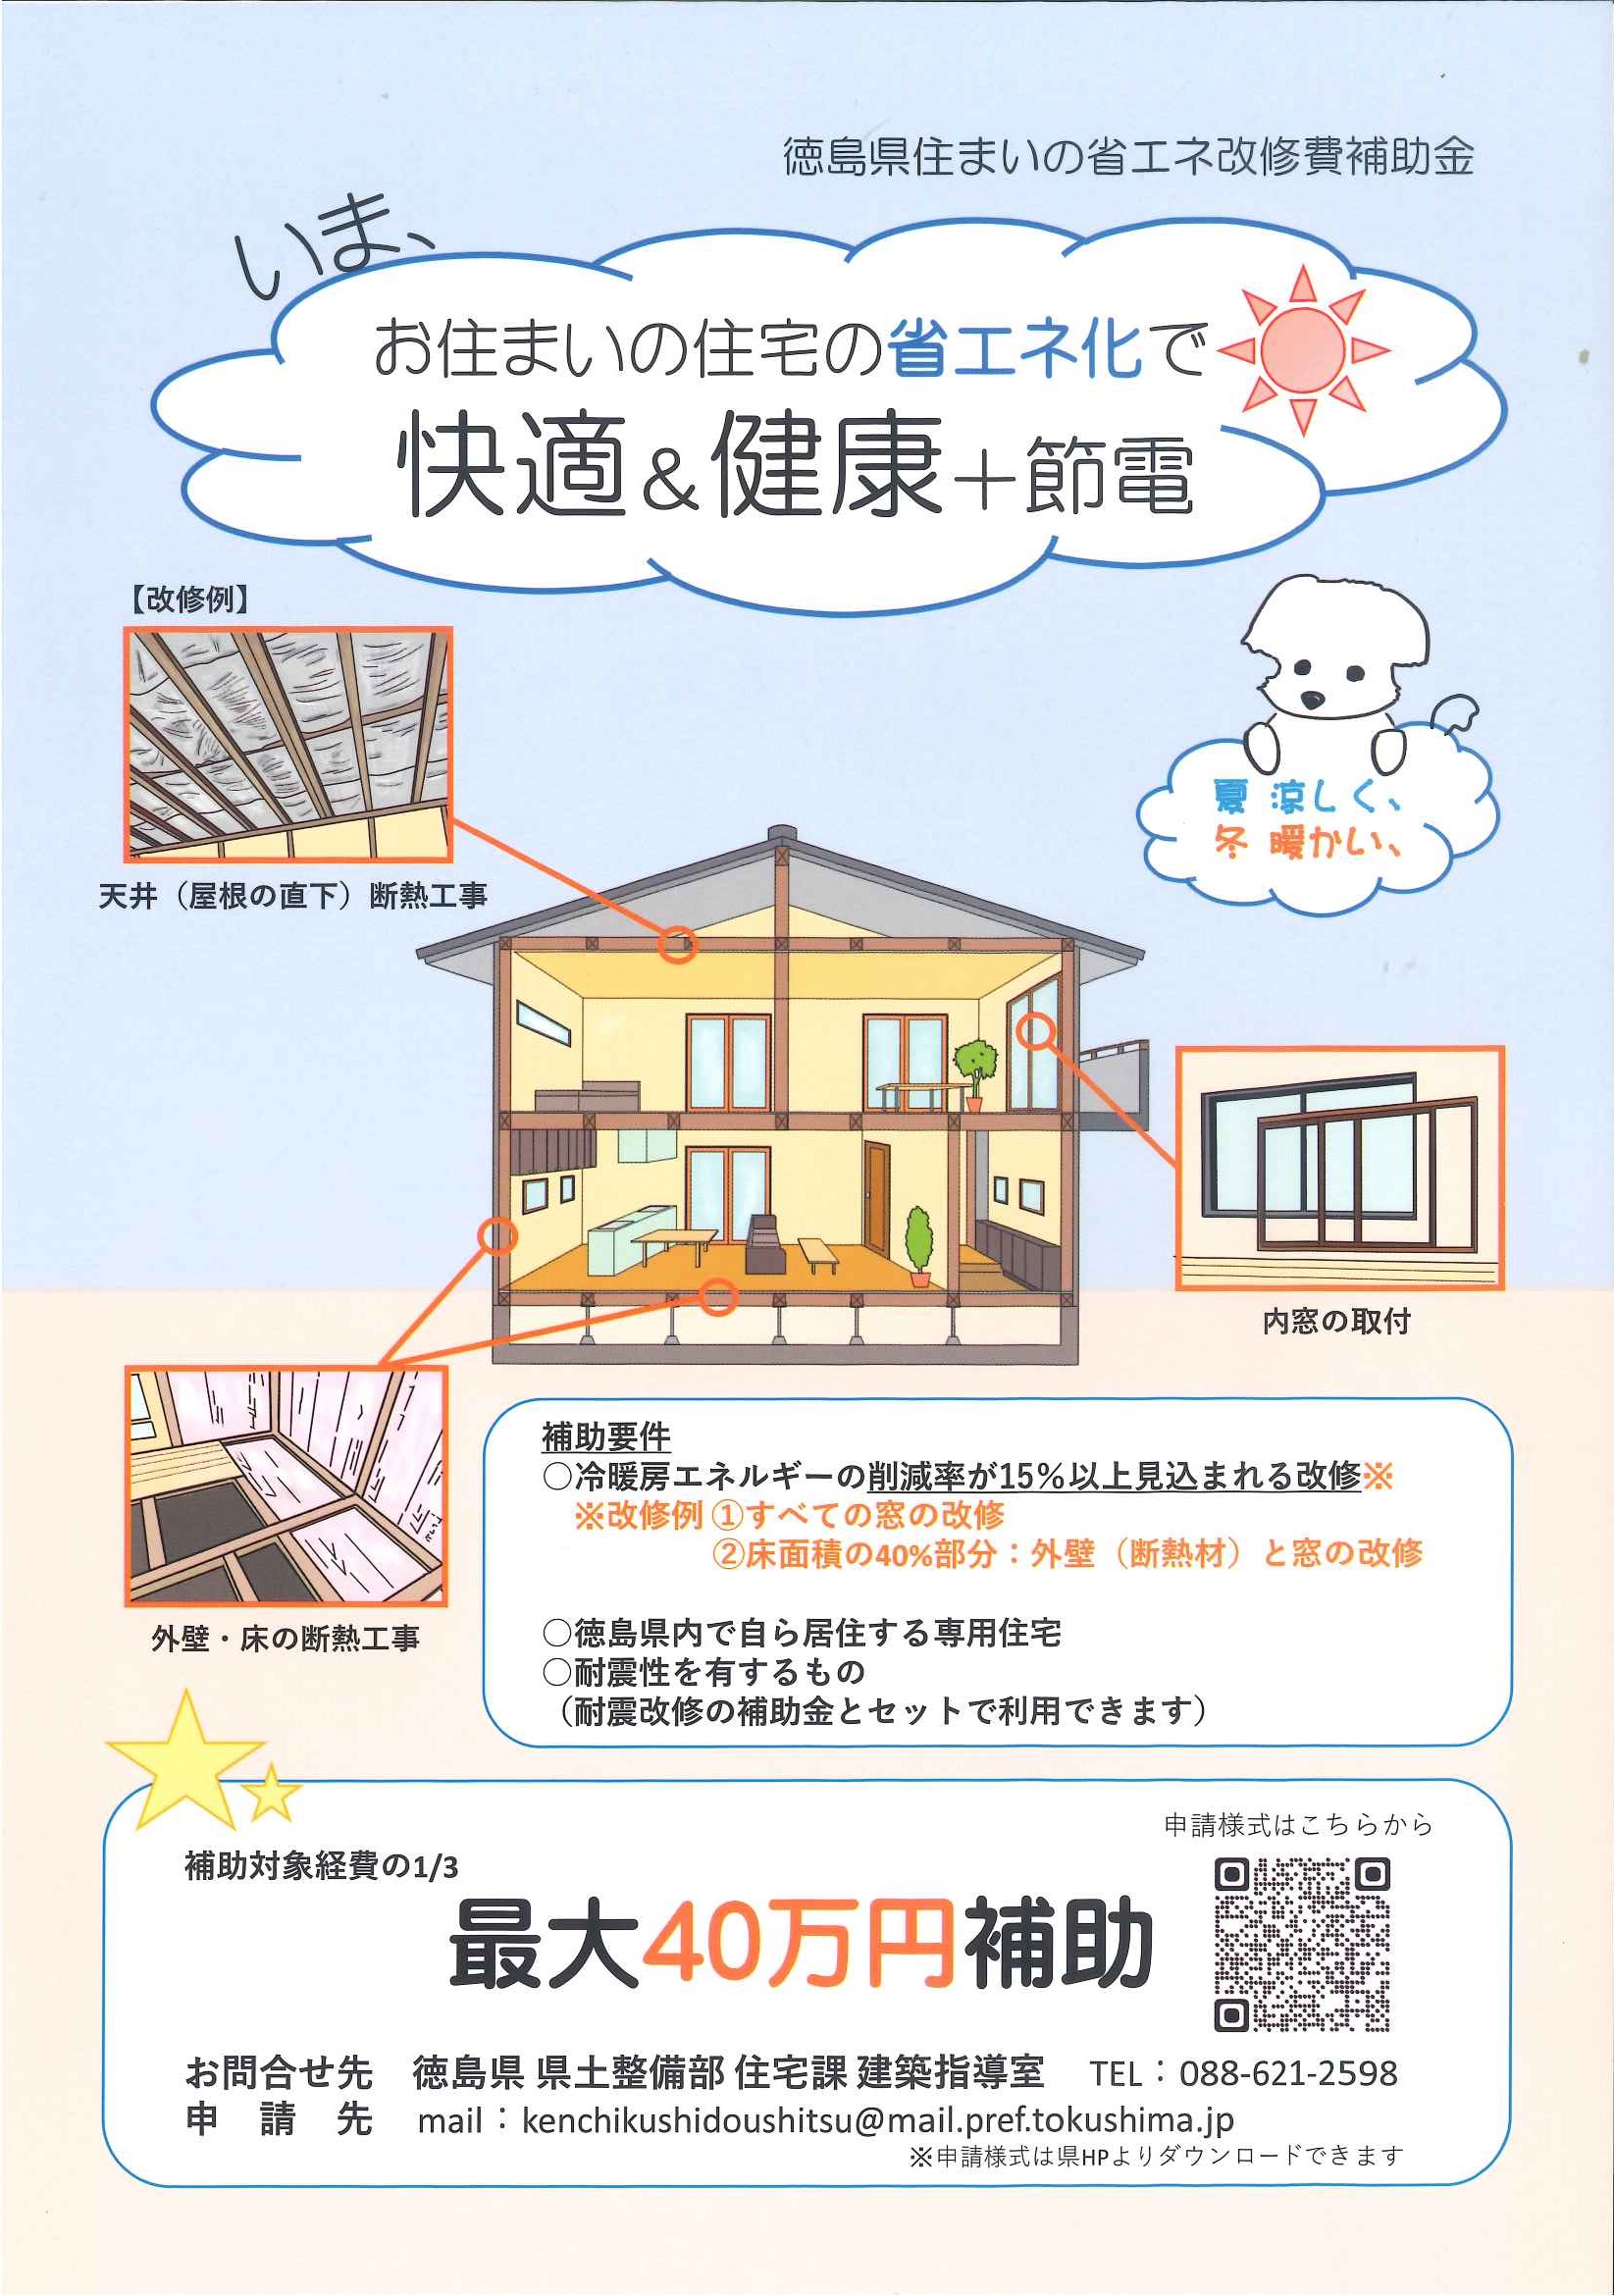 徳島県より補助金のお知らせです。新築 リフォームは徳島県 阿波市 プロジェクトホームで♪